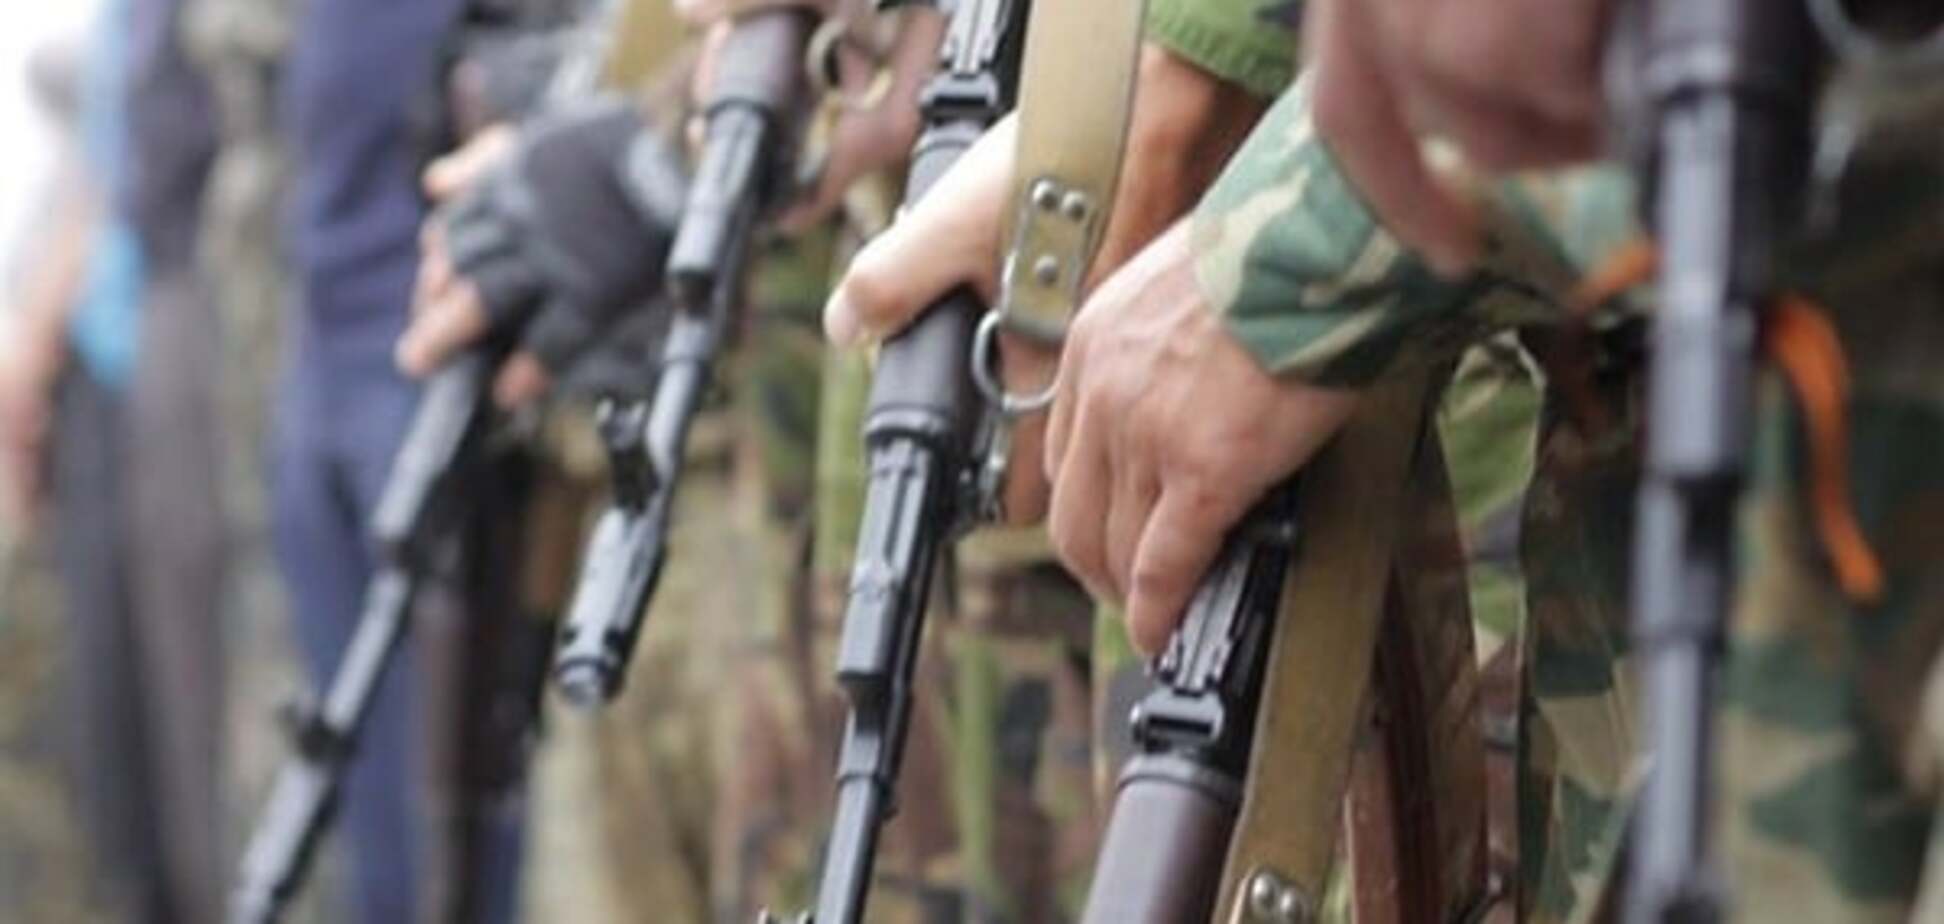 Угамувалися? Терористи на Донбасі зменшили кількість обстрілів